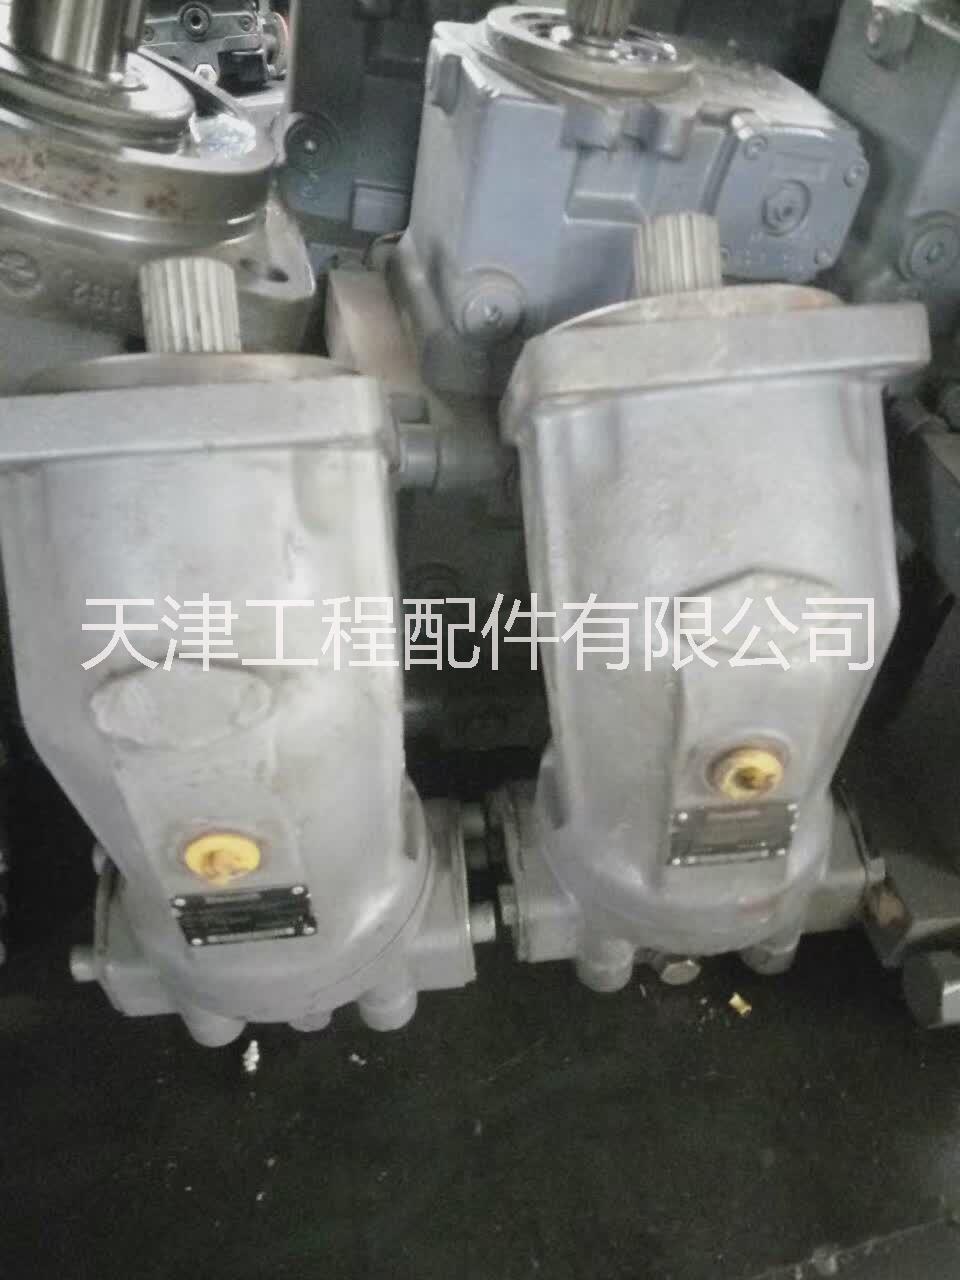 天津机械液压泵公司 天津机械液压配件价格 天津液压泵厂家直销